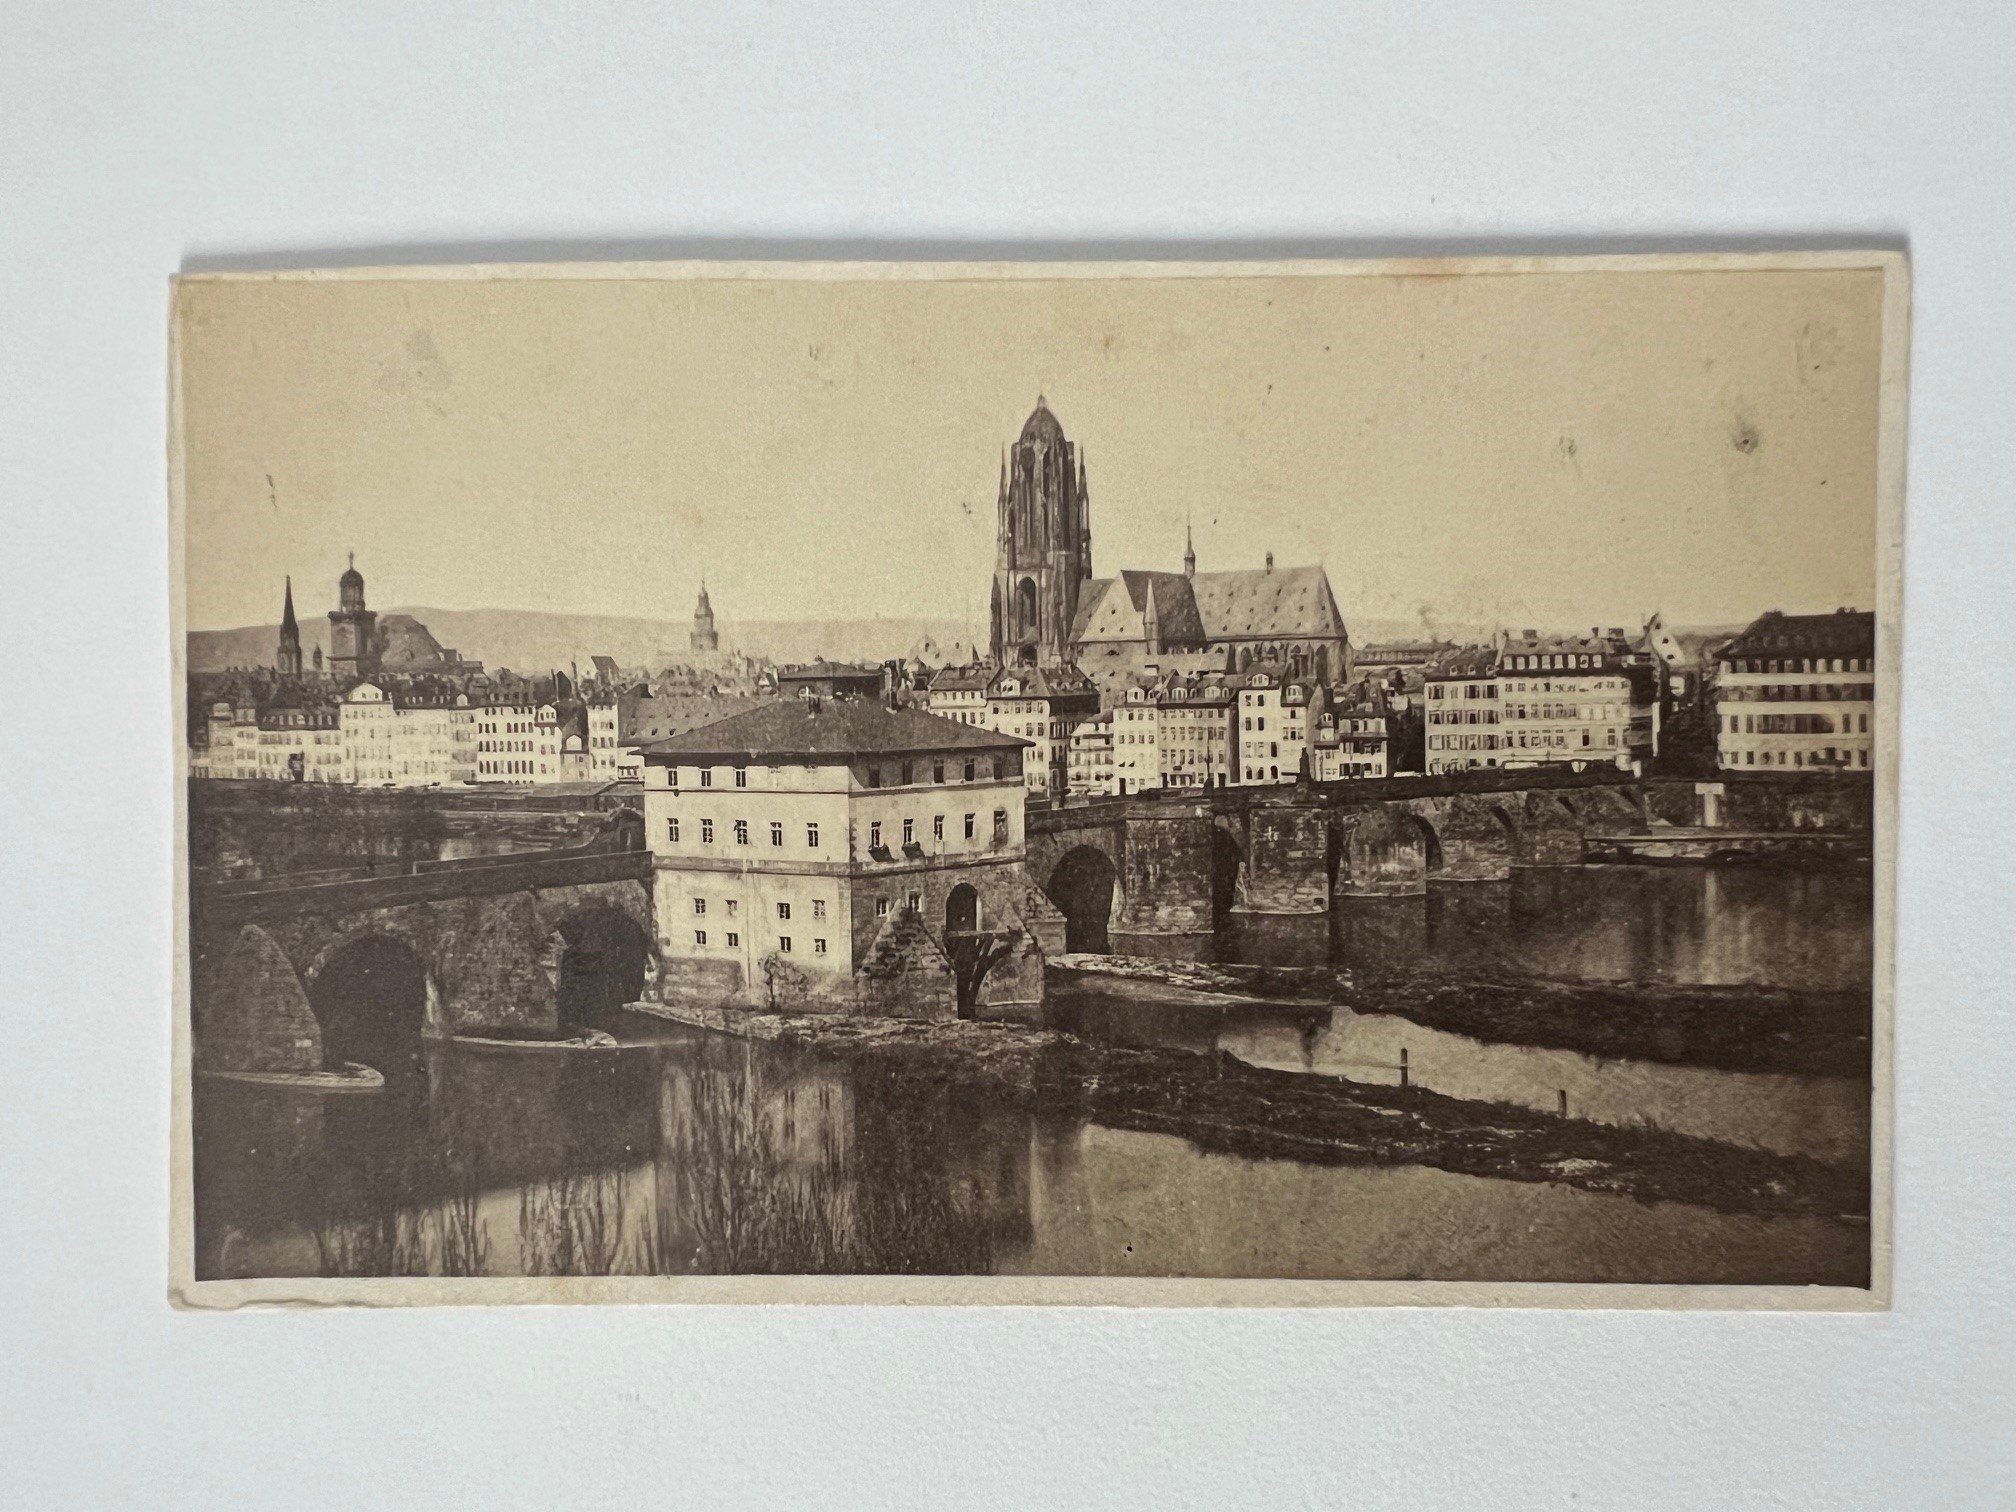 CdV, Friedrich Wilhelm Maas, Frankfurt, Alte Brücke mit Dom, ca. 1863. (Taunus-Rhein-Main - Regionalgeschichtliche Sammlung Dr. Stefan Naas CC BY-NC-SA)